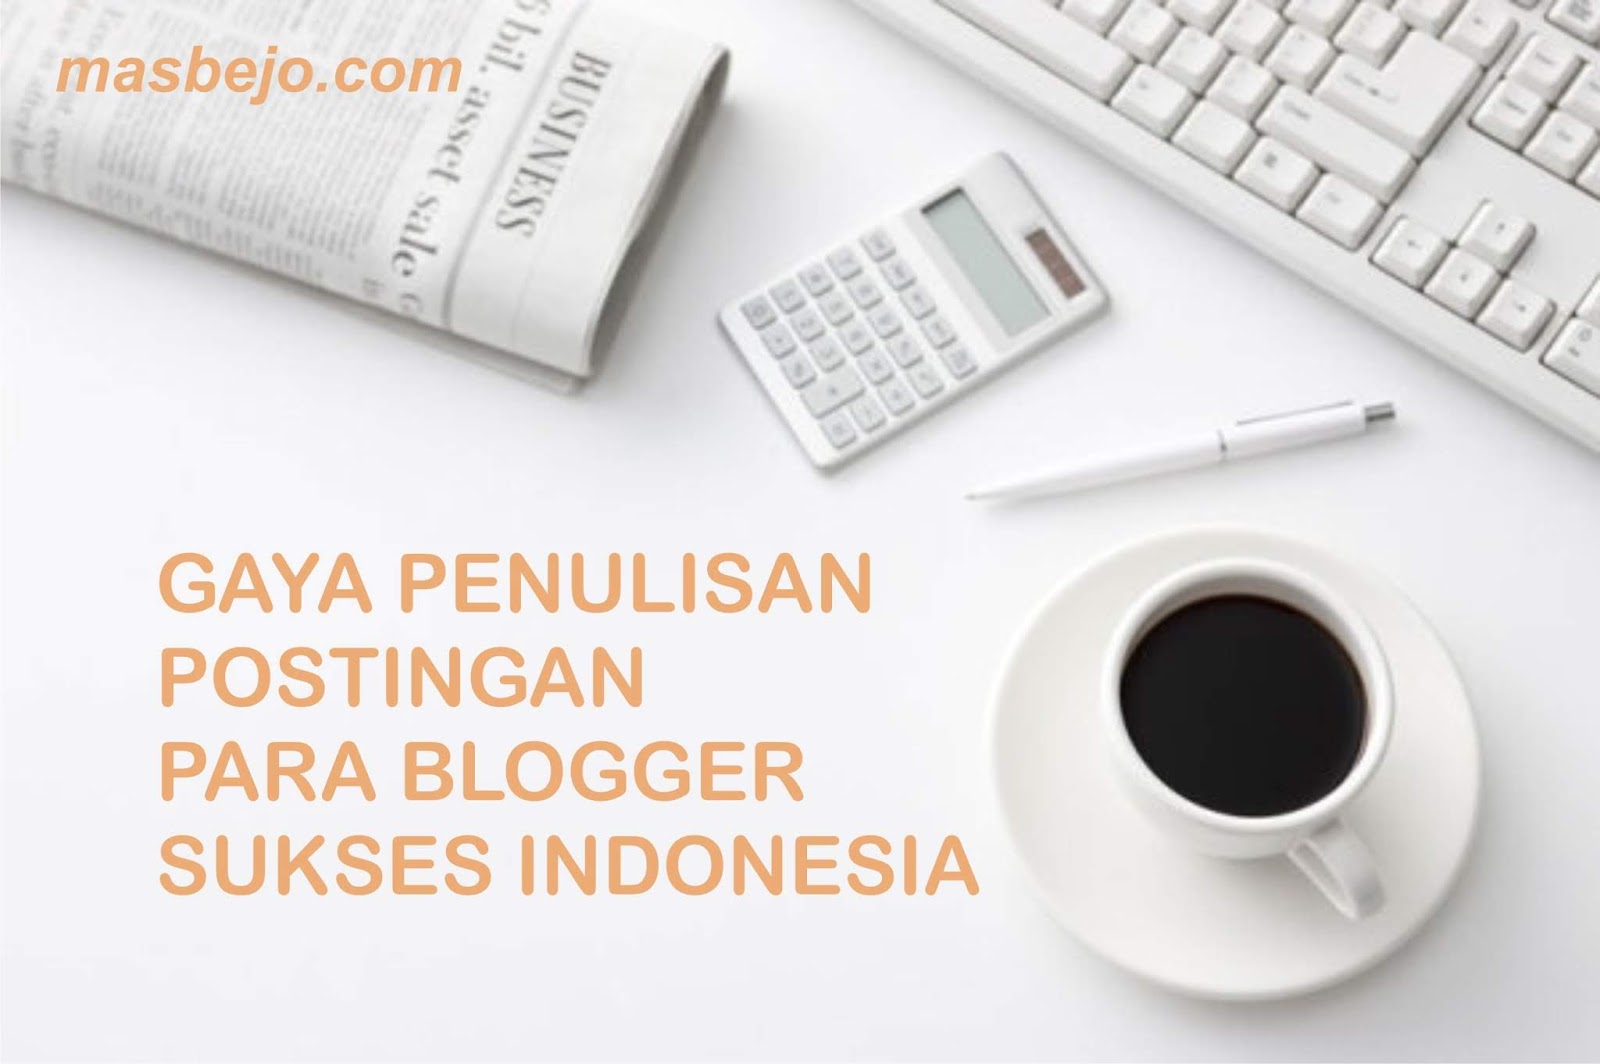 Gaya Penulisan Postingan Para Blogger Sukses di Indonesia